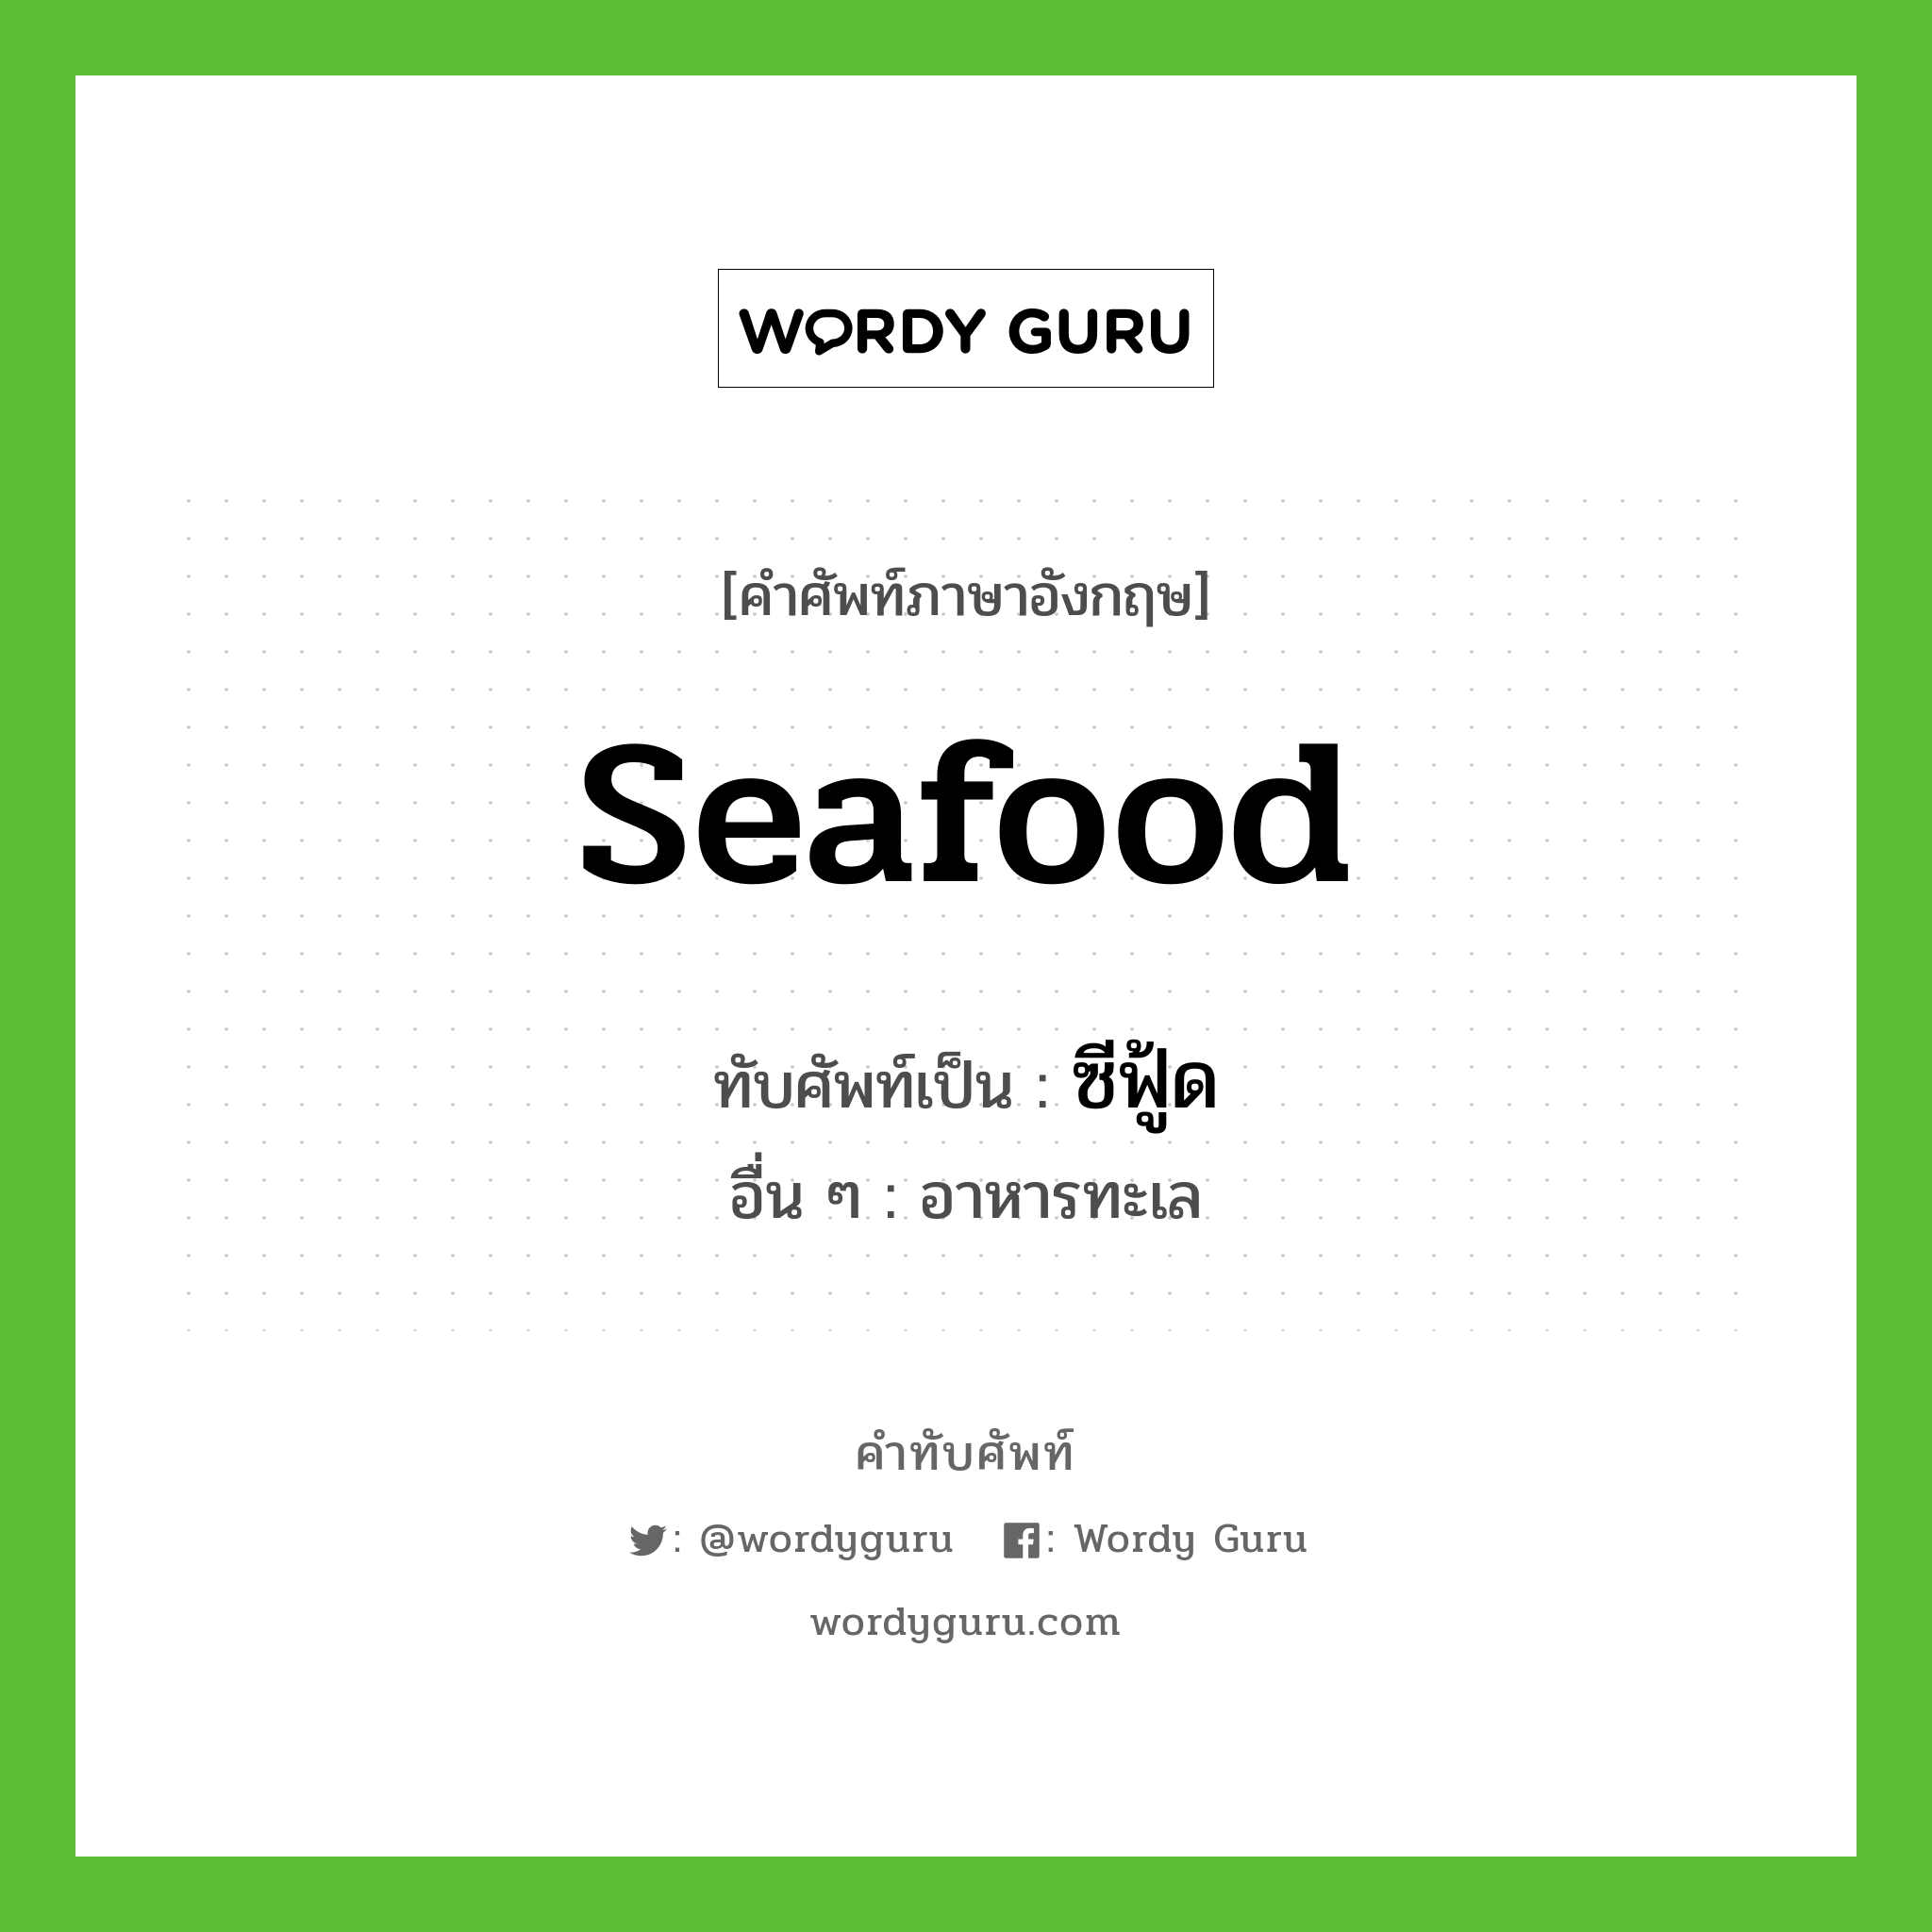 seafood เขียนเป็นคำไทยว่าอะไร?, คำศัพท์ภาษาอังกฤษ seafood ทับศัพท์เป็น ซีฟู้ด อื่น ๆ อาหารทะเล